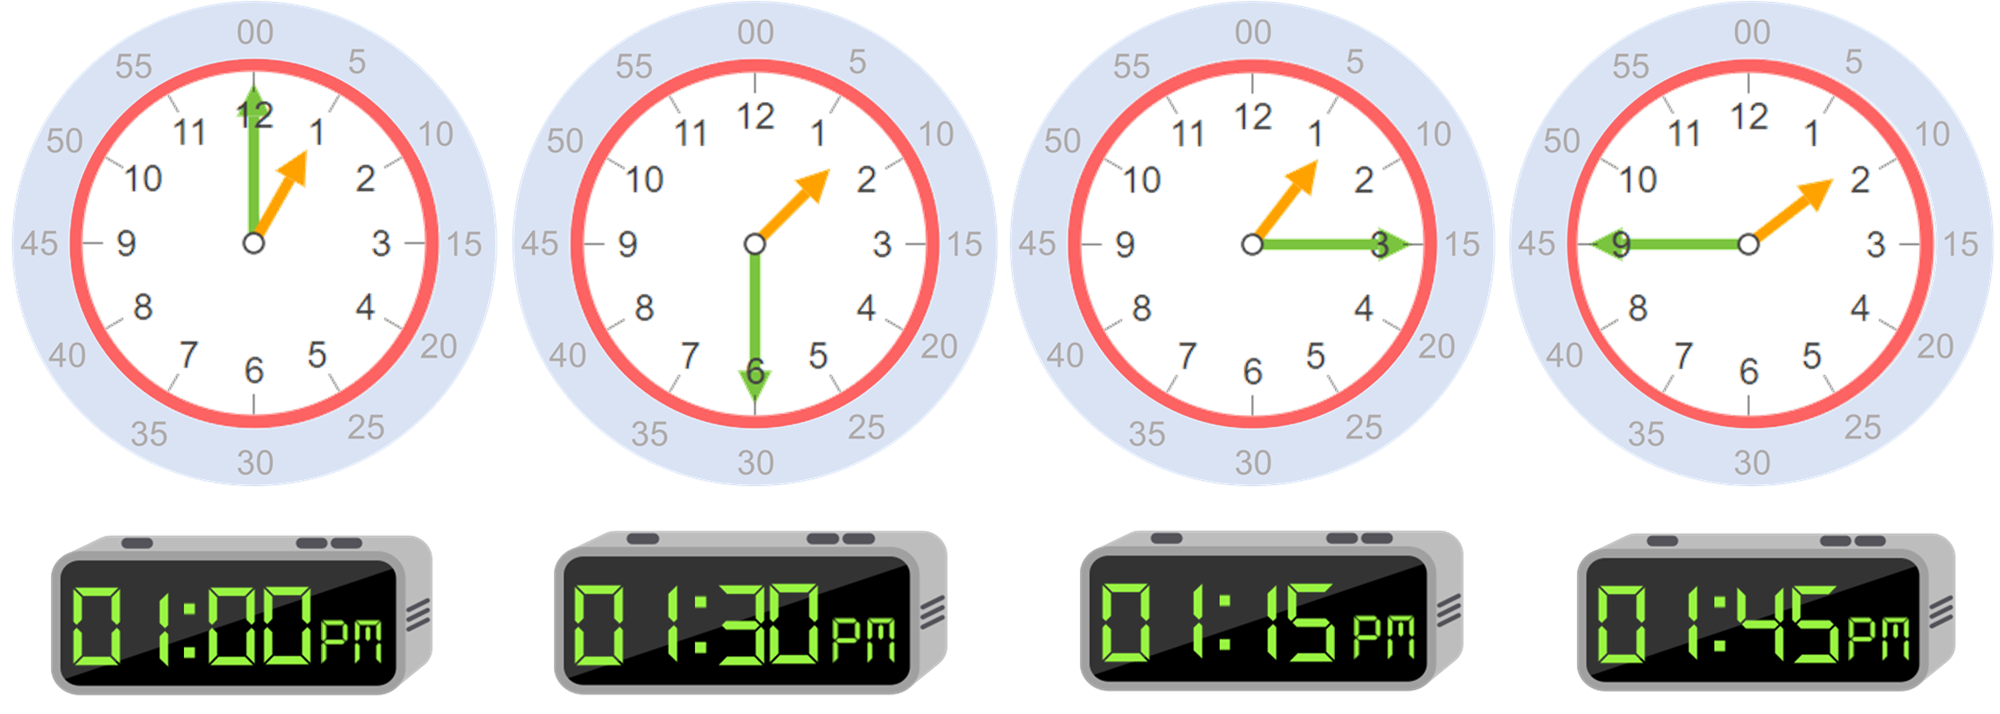 azafata Dispersión apilar Horas: conceptos básicos para aprender a leer la hora en un reloj - Smartick